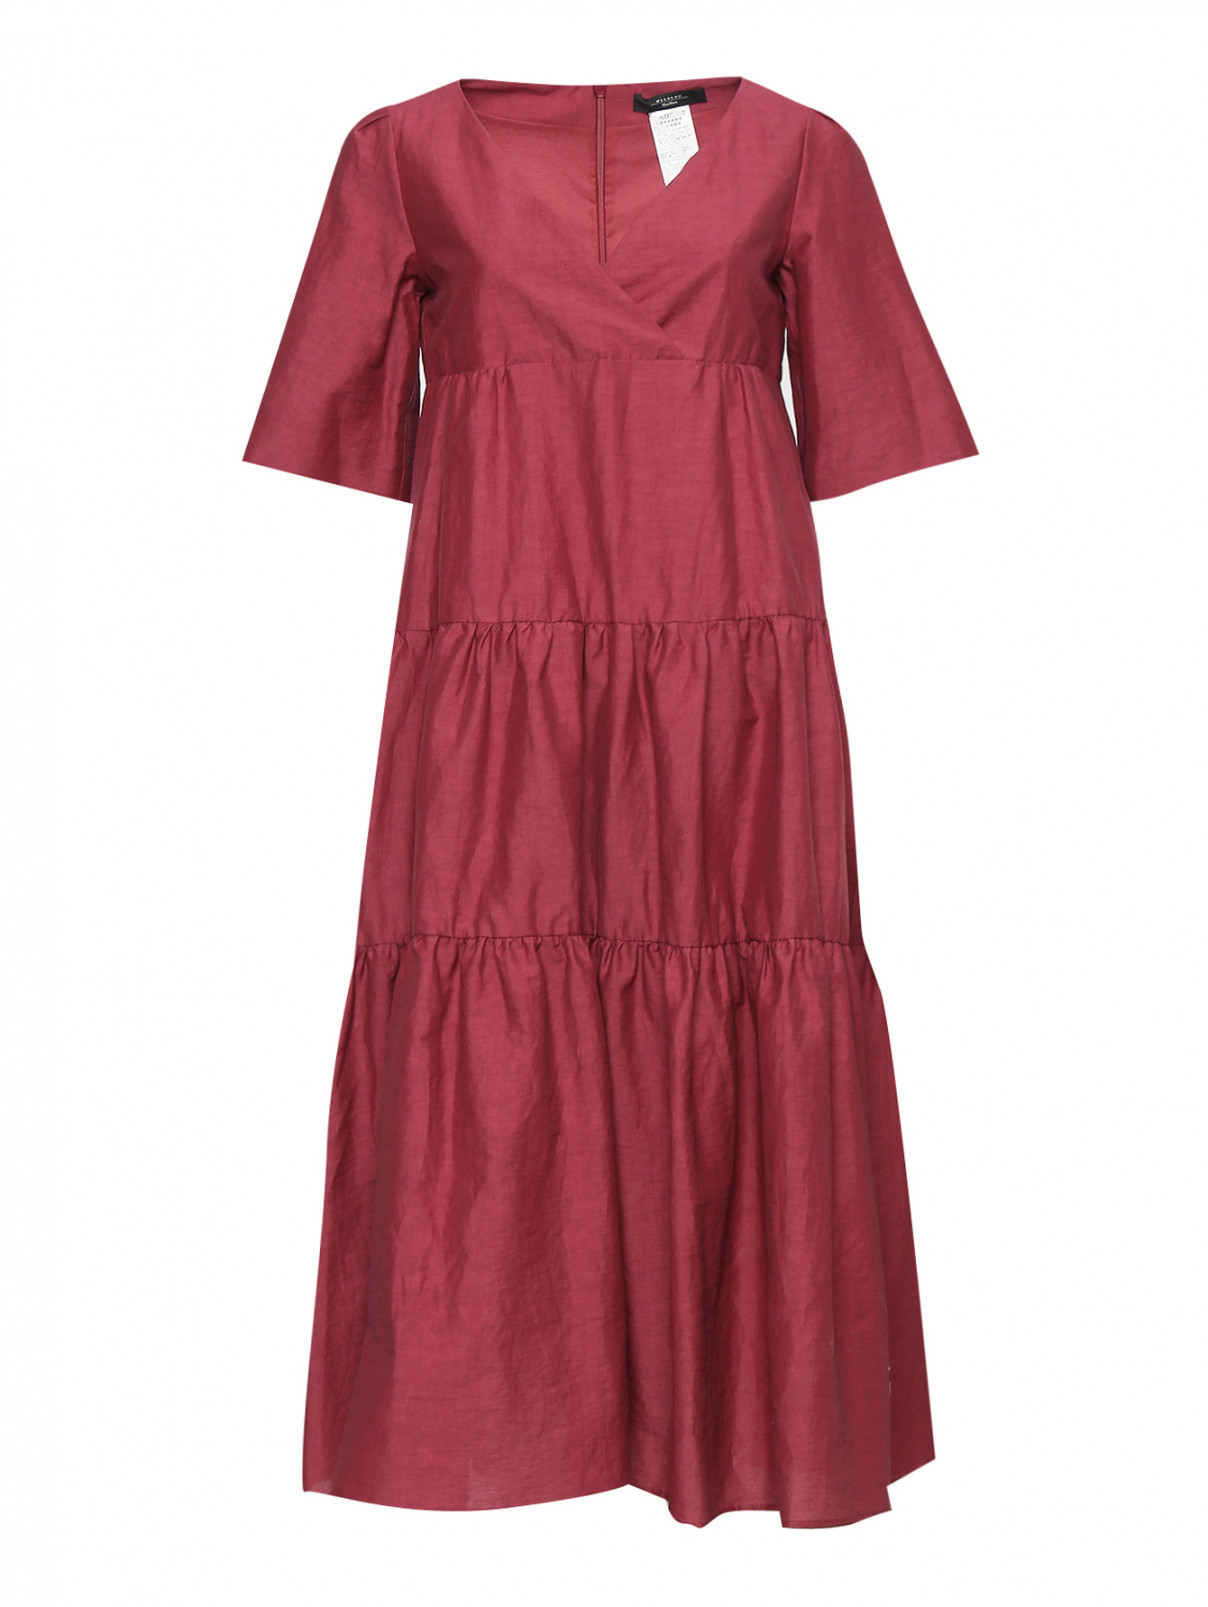 Платье из хлопка и льна с коротким рукавом Weekend Max Mara  –  Общий вид  – Цвет:  Красный